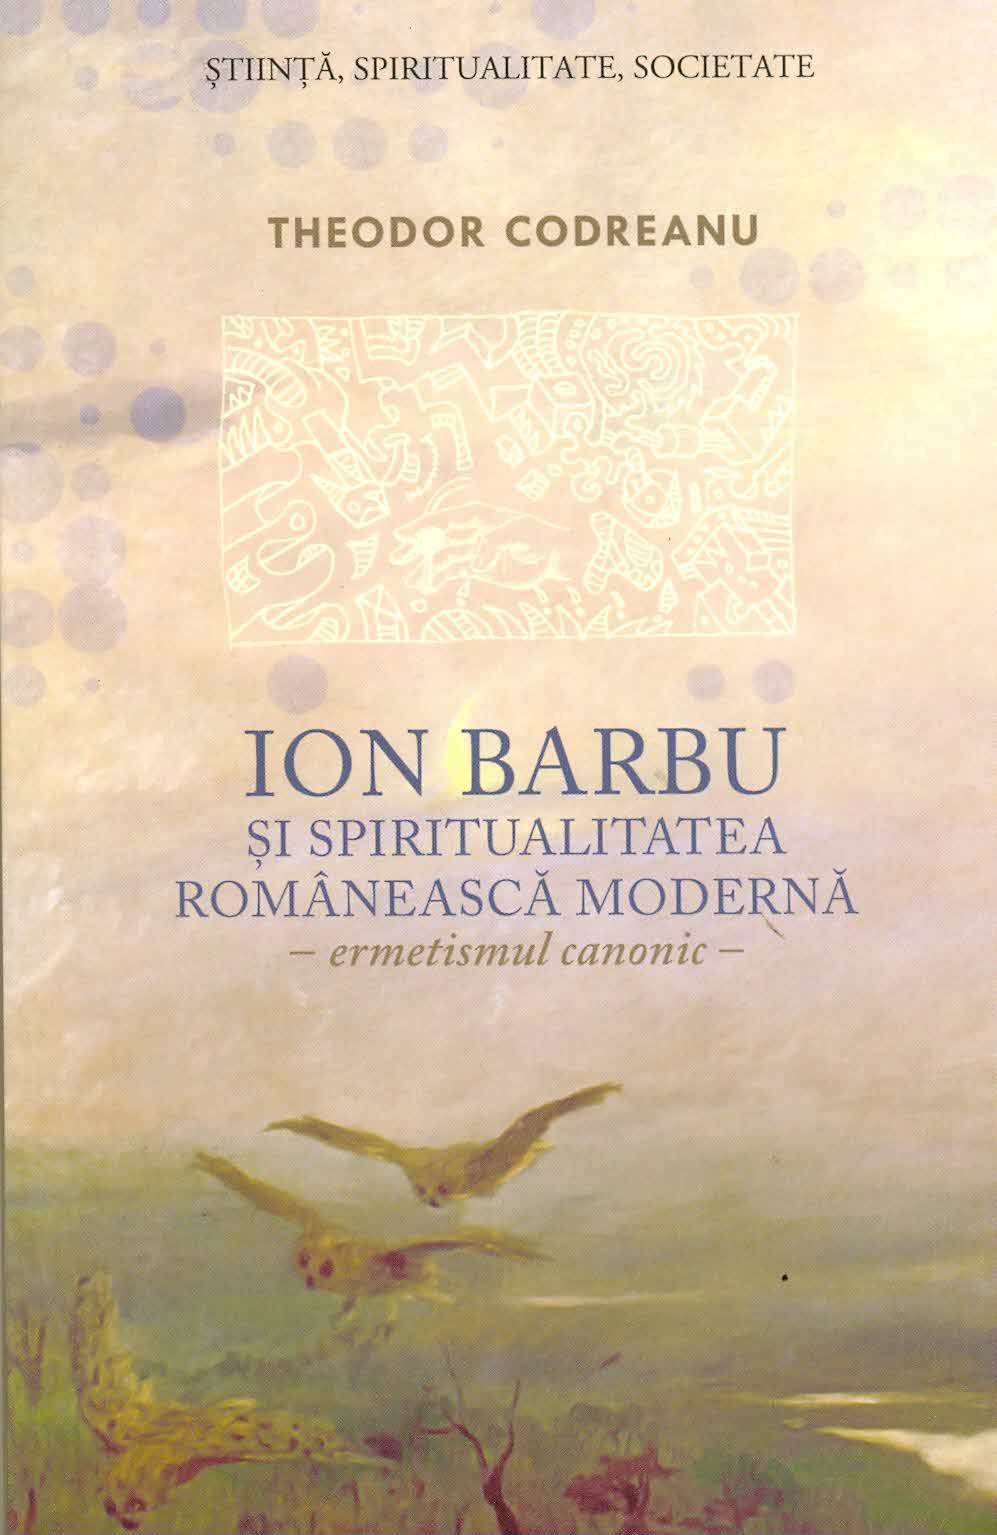 Ion Barbu si spiritualitatea romaneasca moderna. Ermetismul canonic | Theodor Codreanu